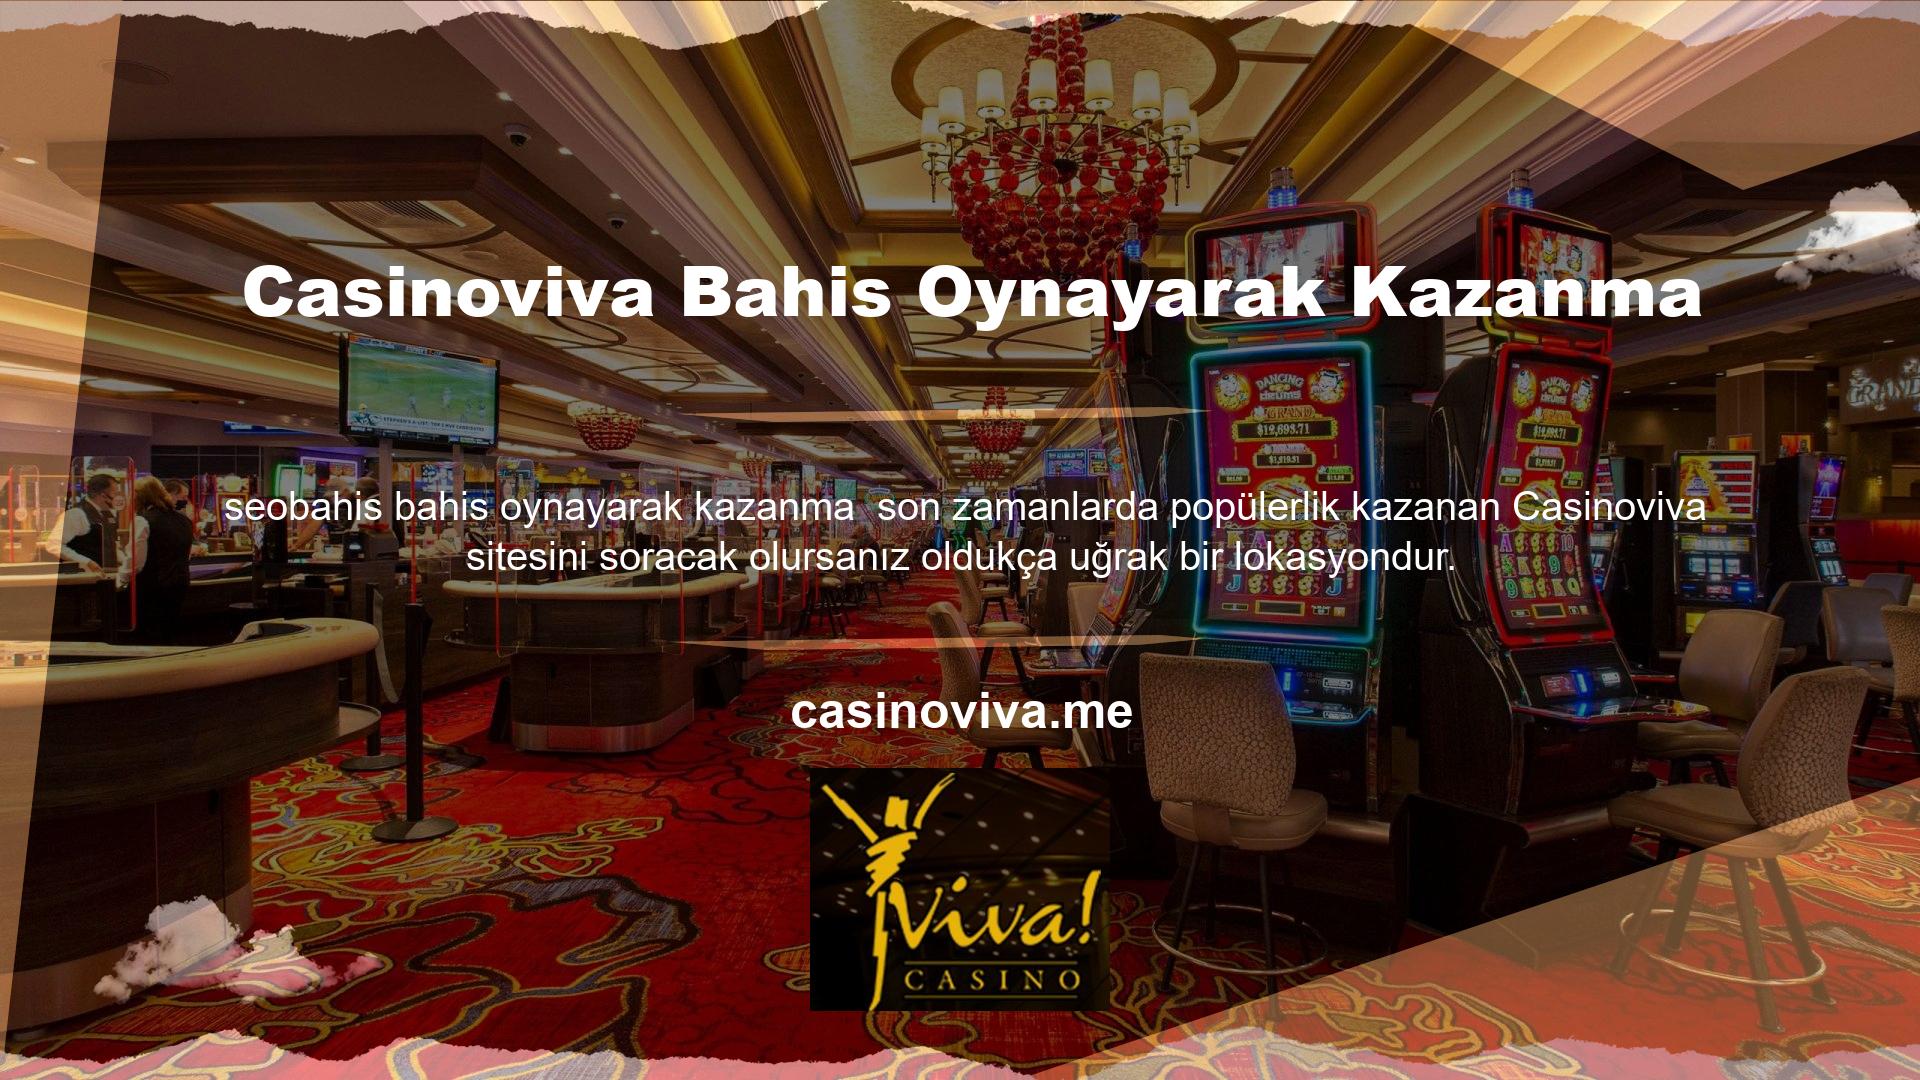 Casinoviva Bahis nispeten yeni bir web sitesi, ancak son derece iyi çalıştığını söylemeliyim